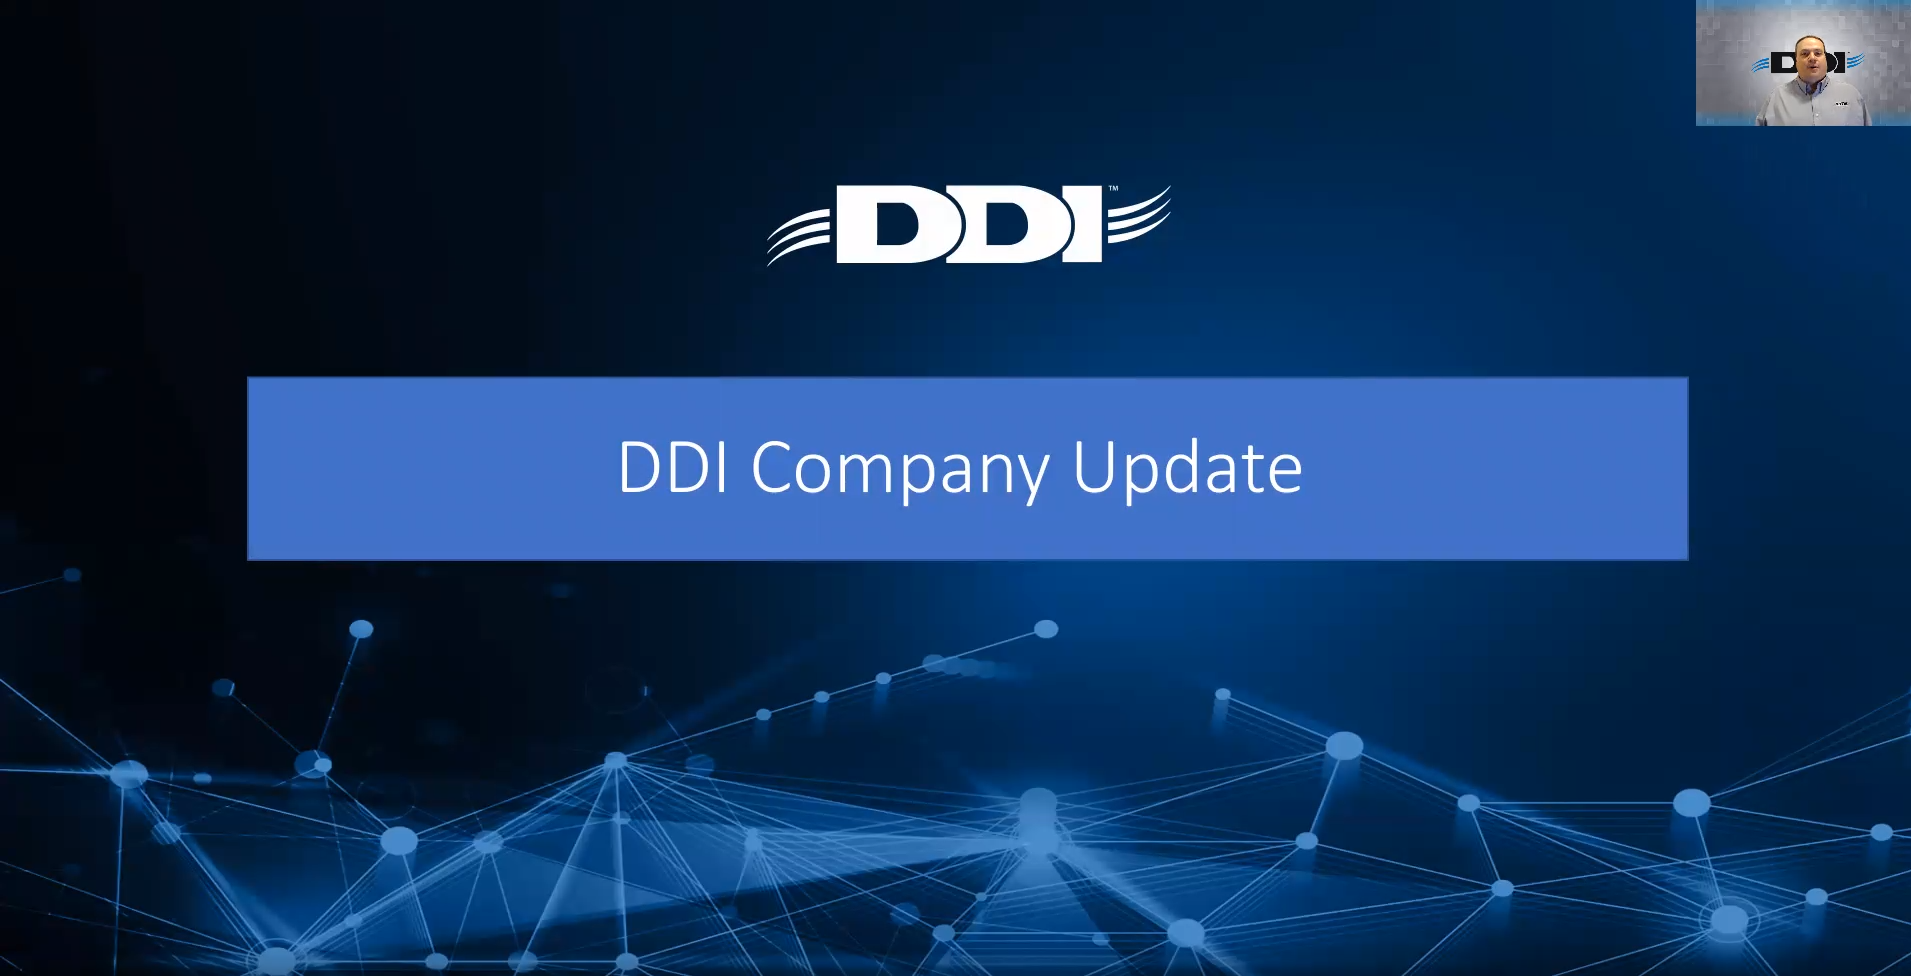 DDI Company Update